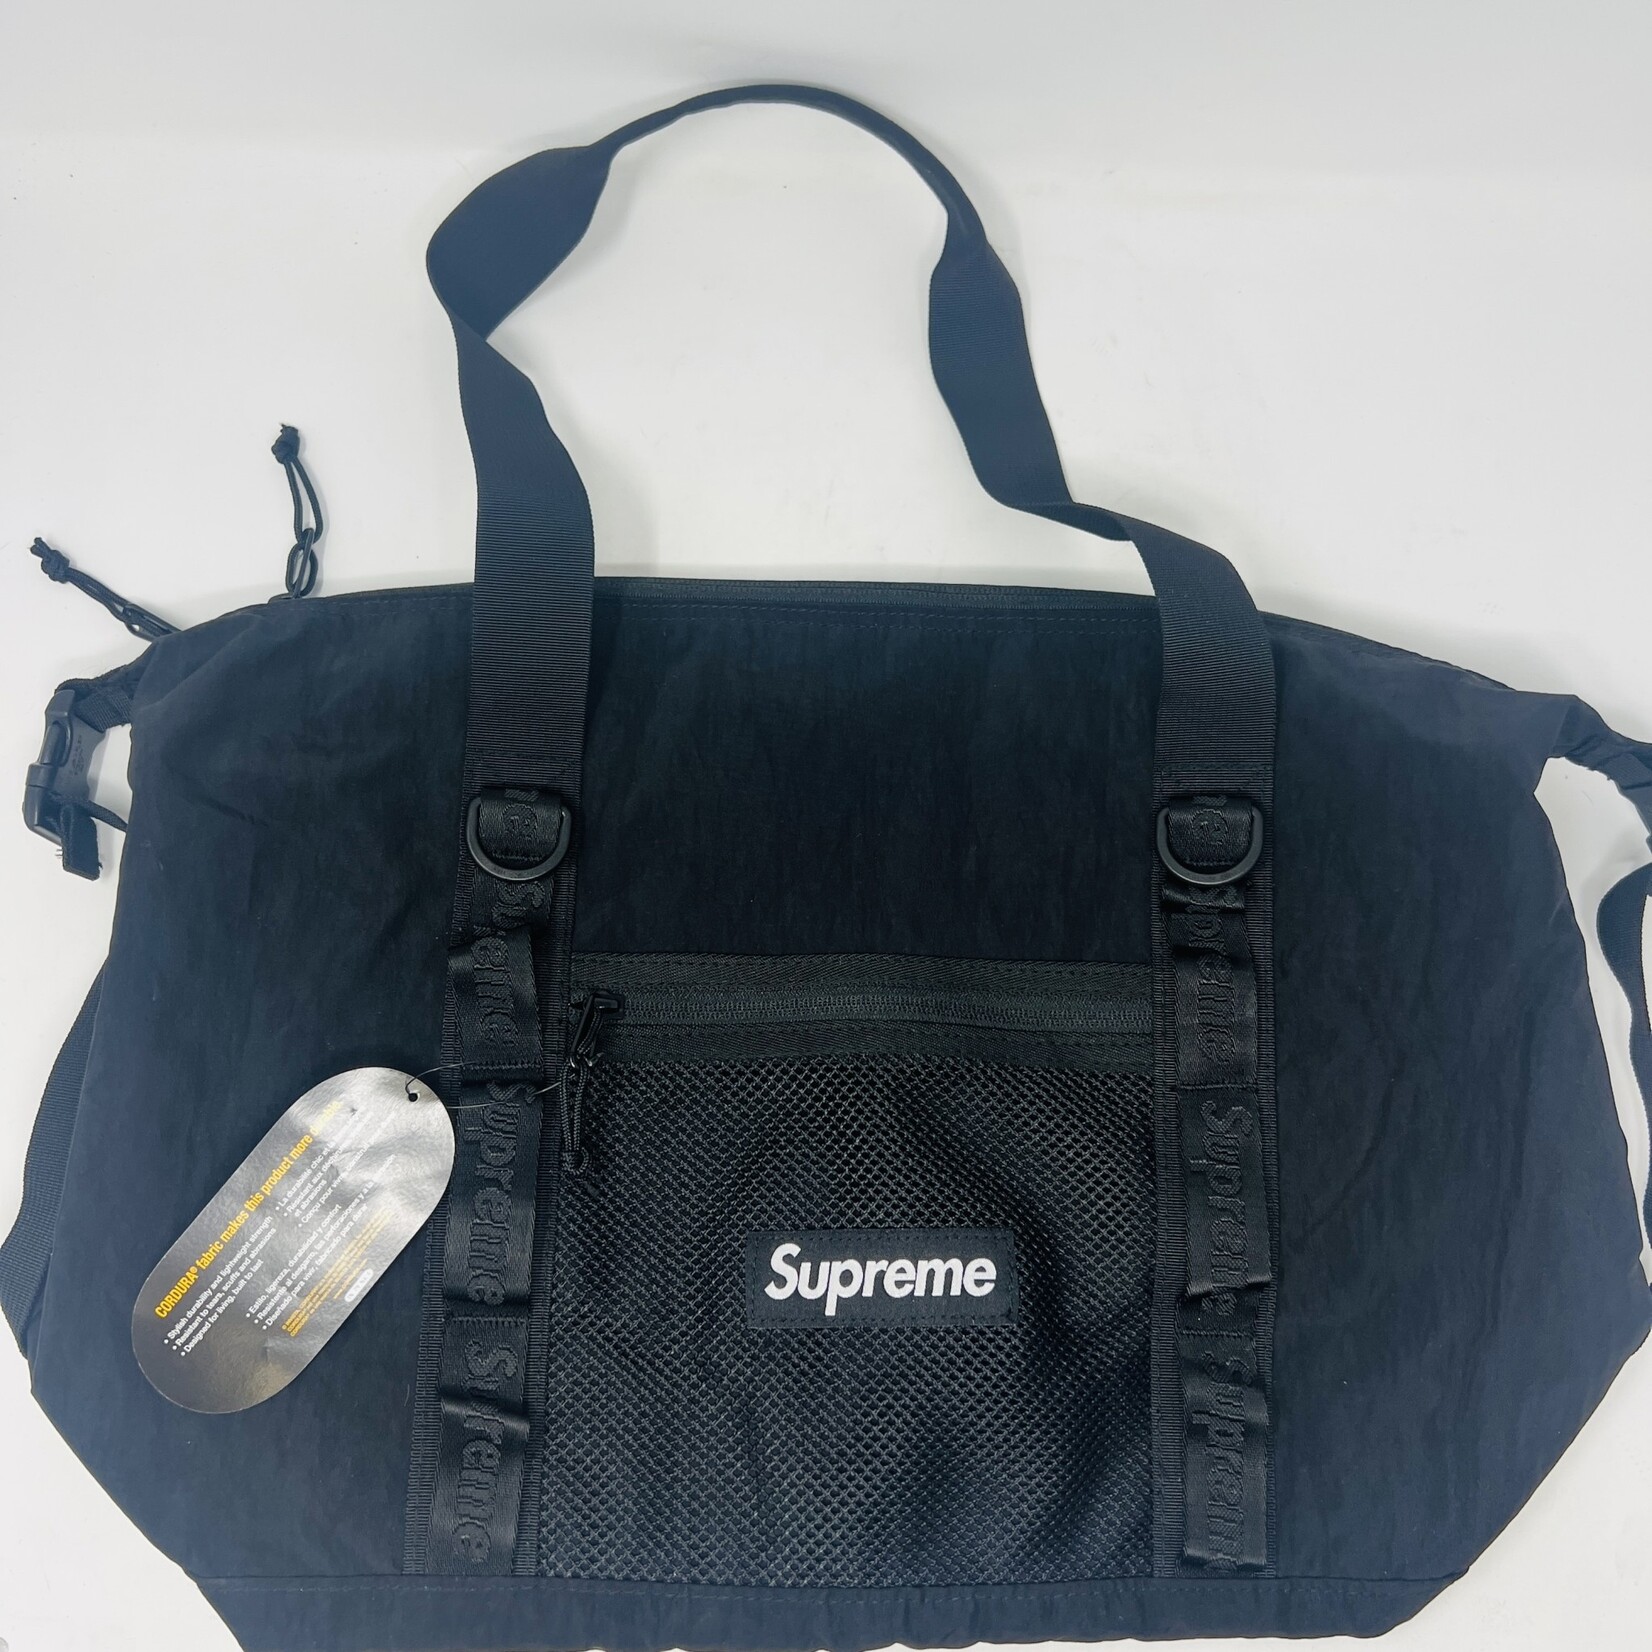 Supreme Zip Tote bag BLACK